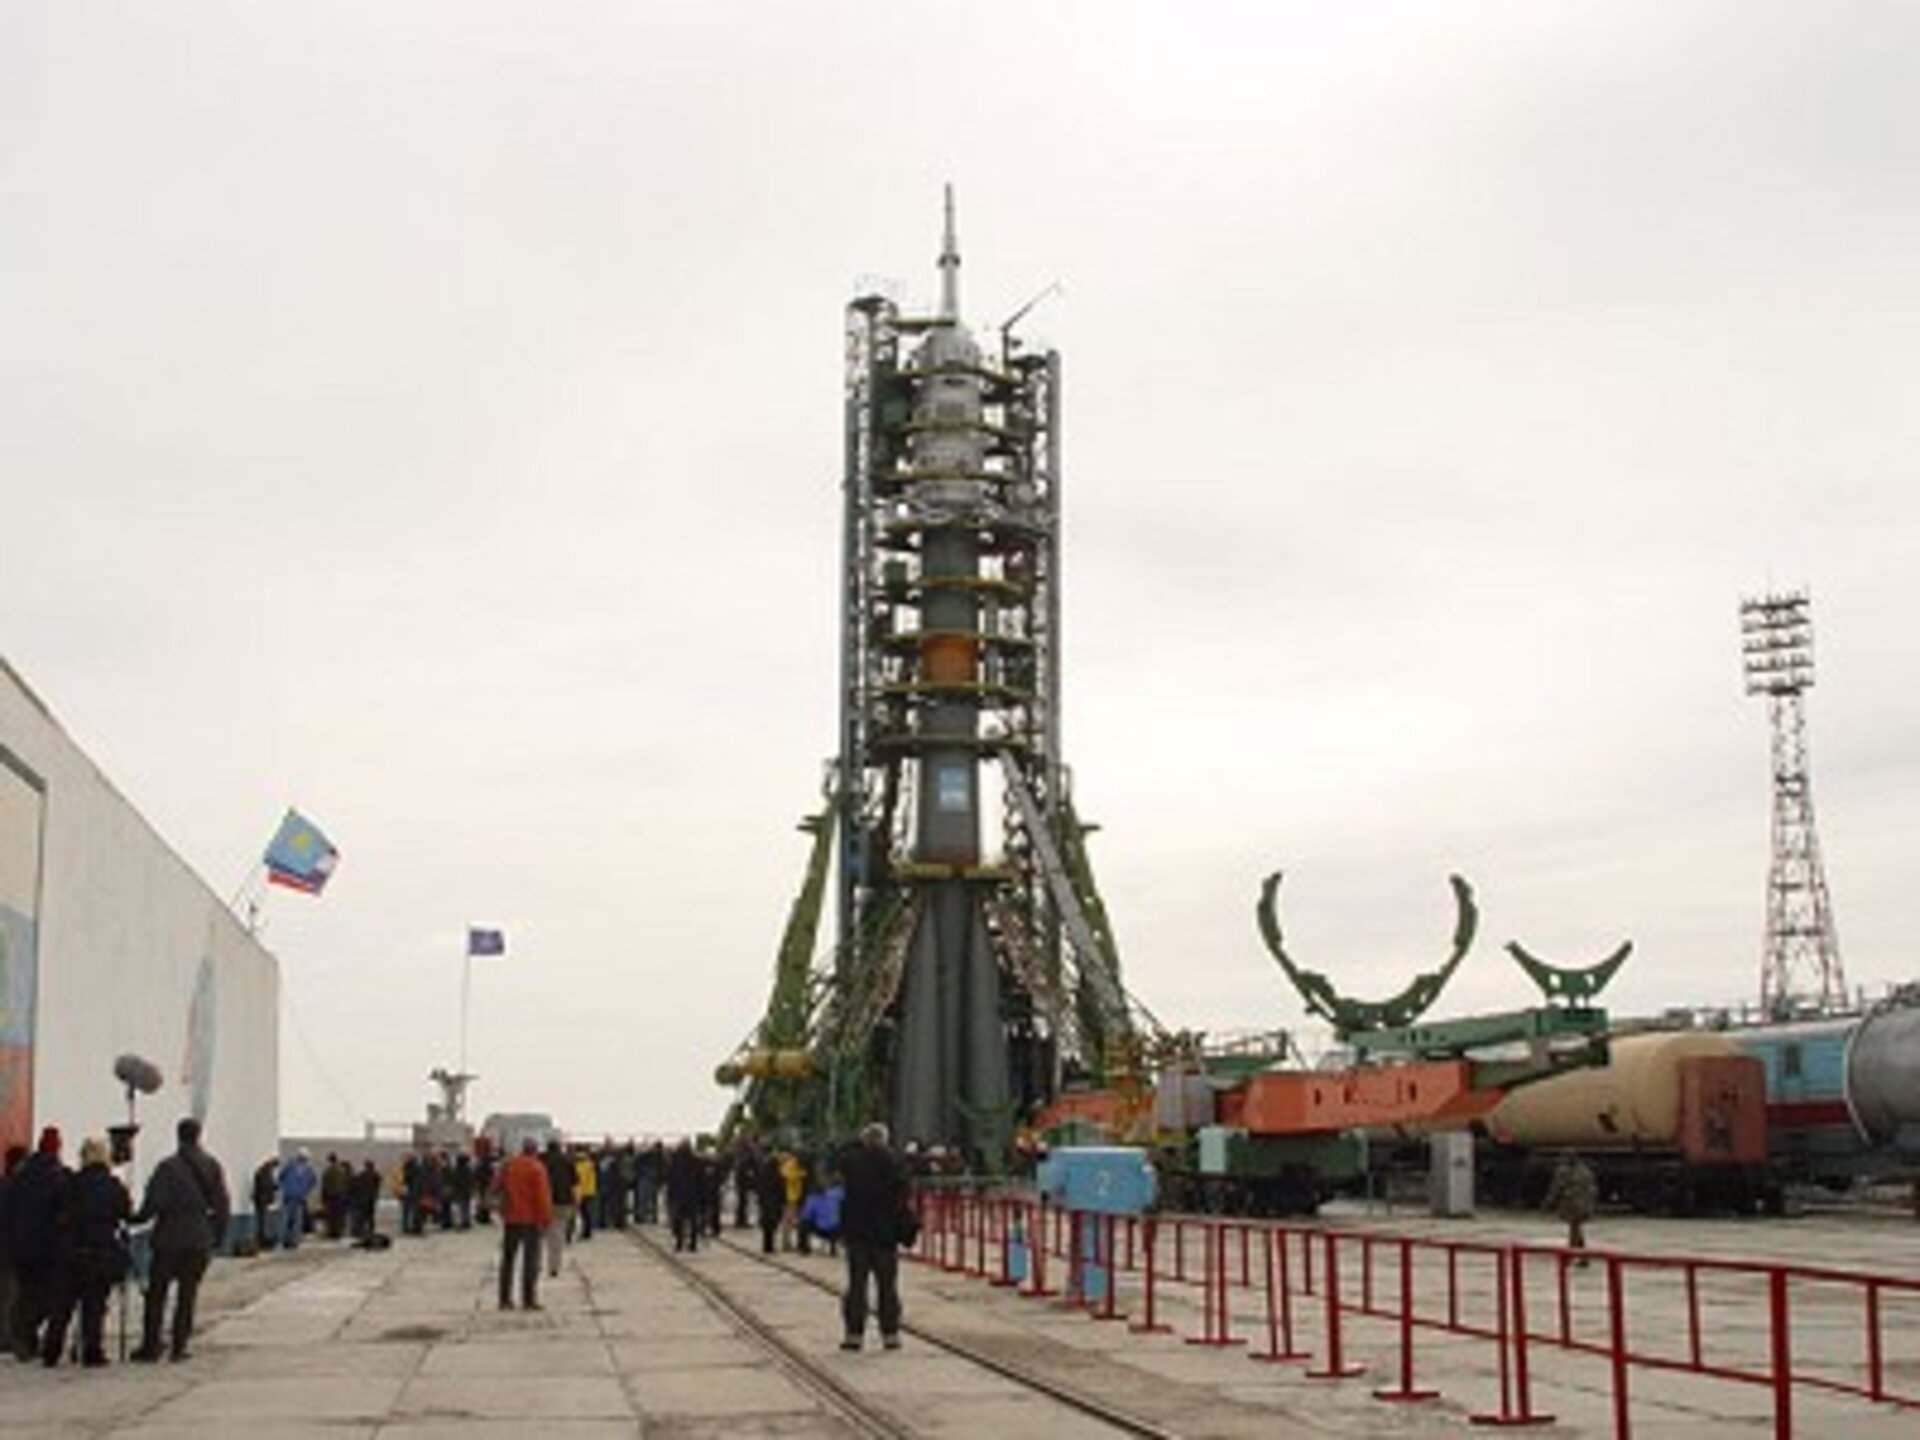 De Sojoez-lanceerraket op het lanceerplatform - klaar voor de lancering op maandag 19 april 2004